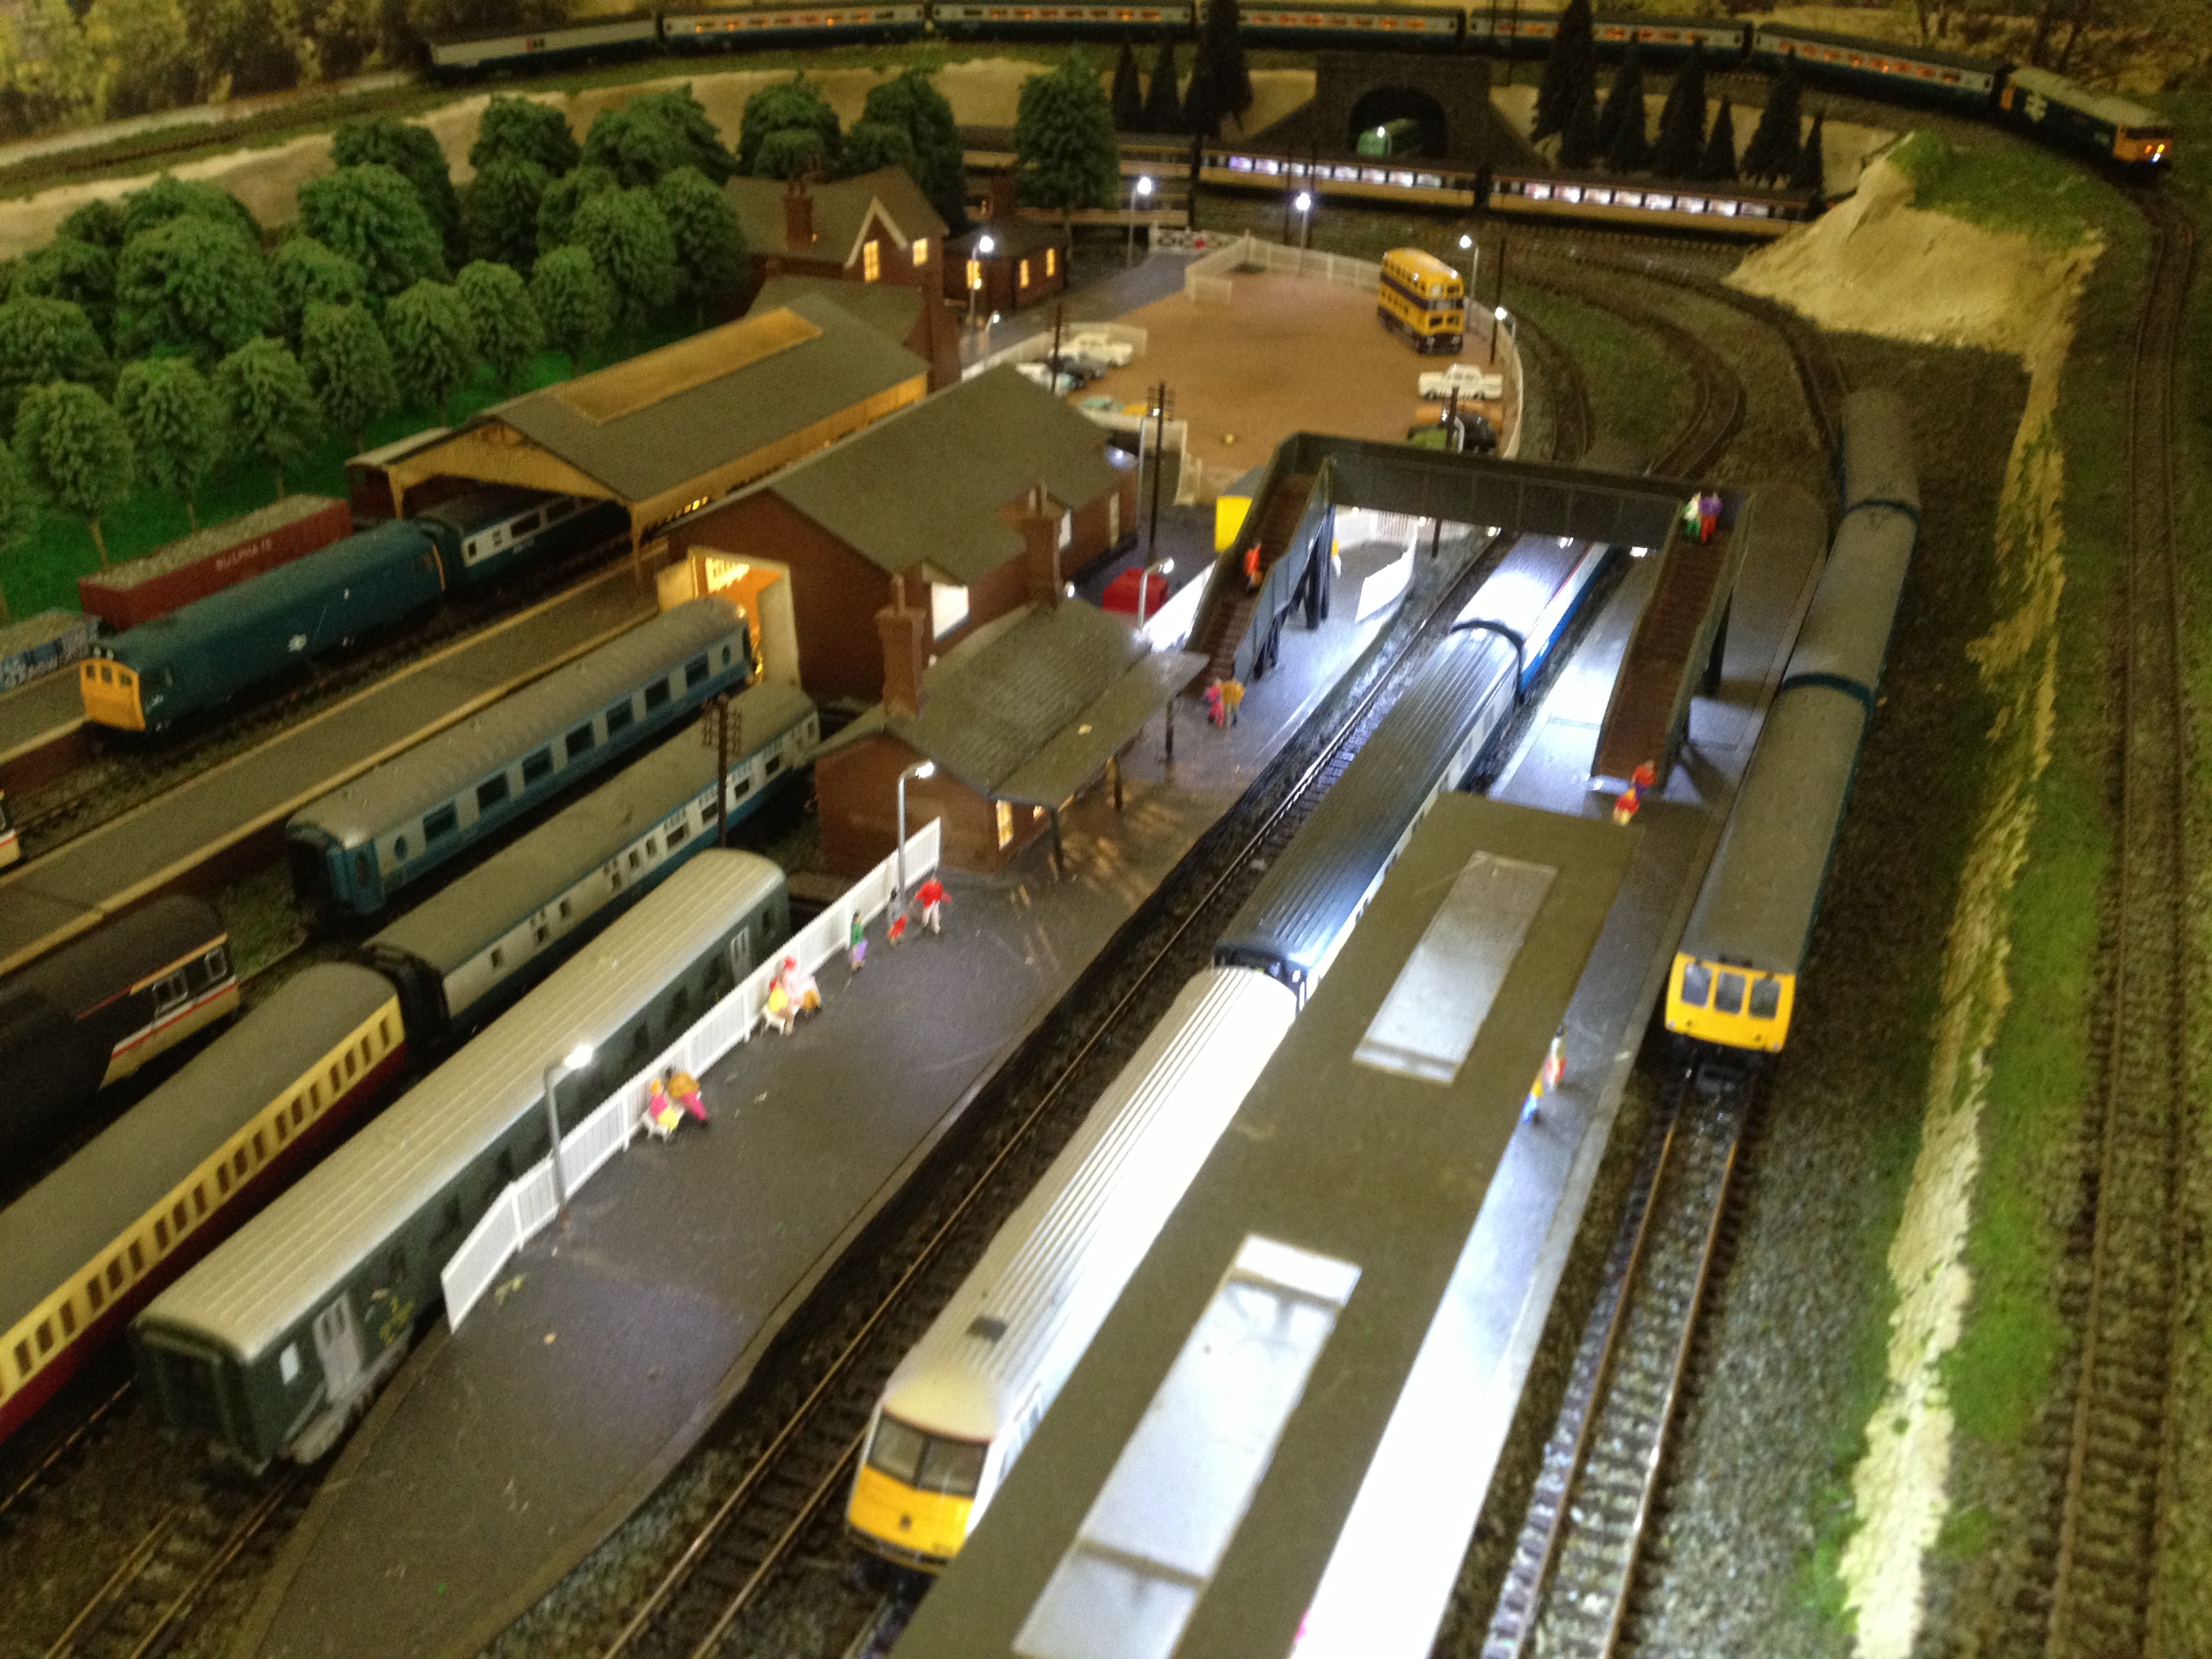 N gauge railway layout - Peters - Model railroad layouts plansModel